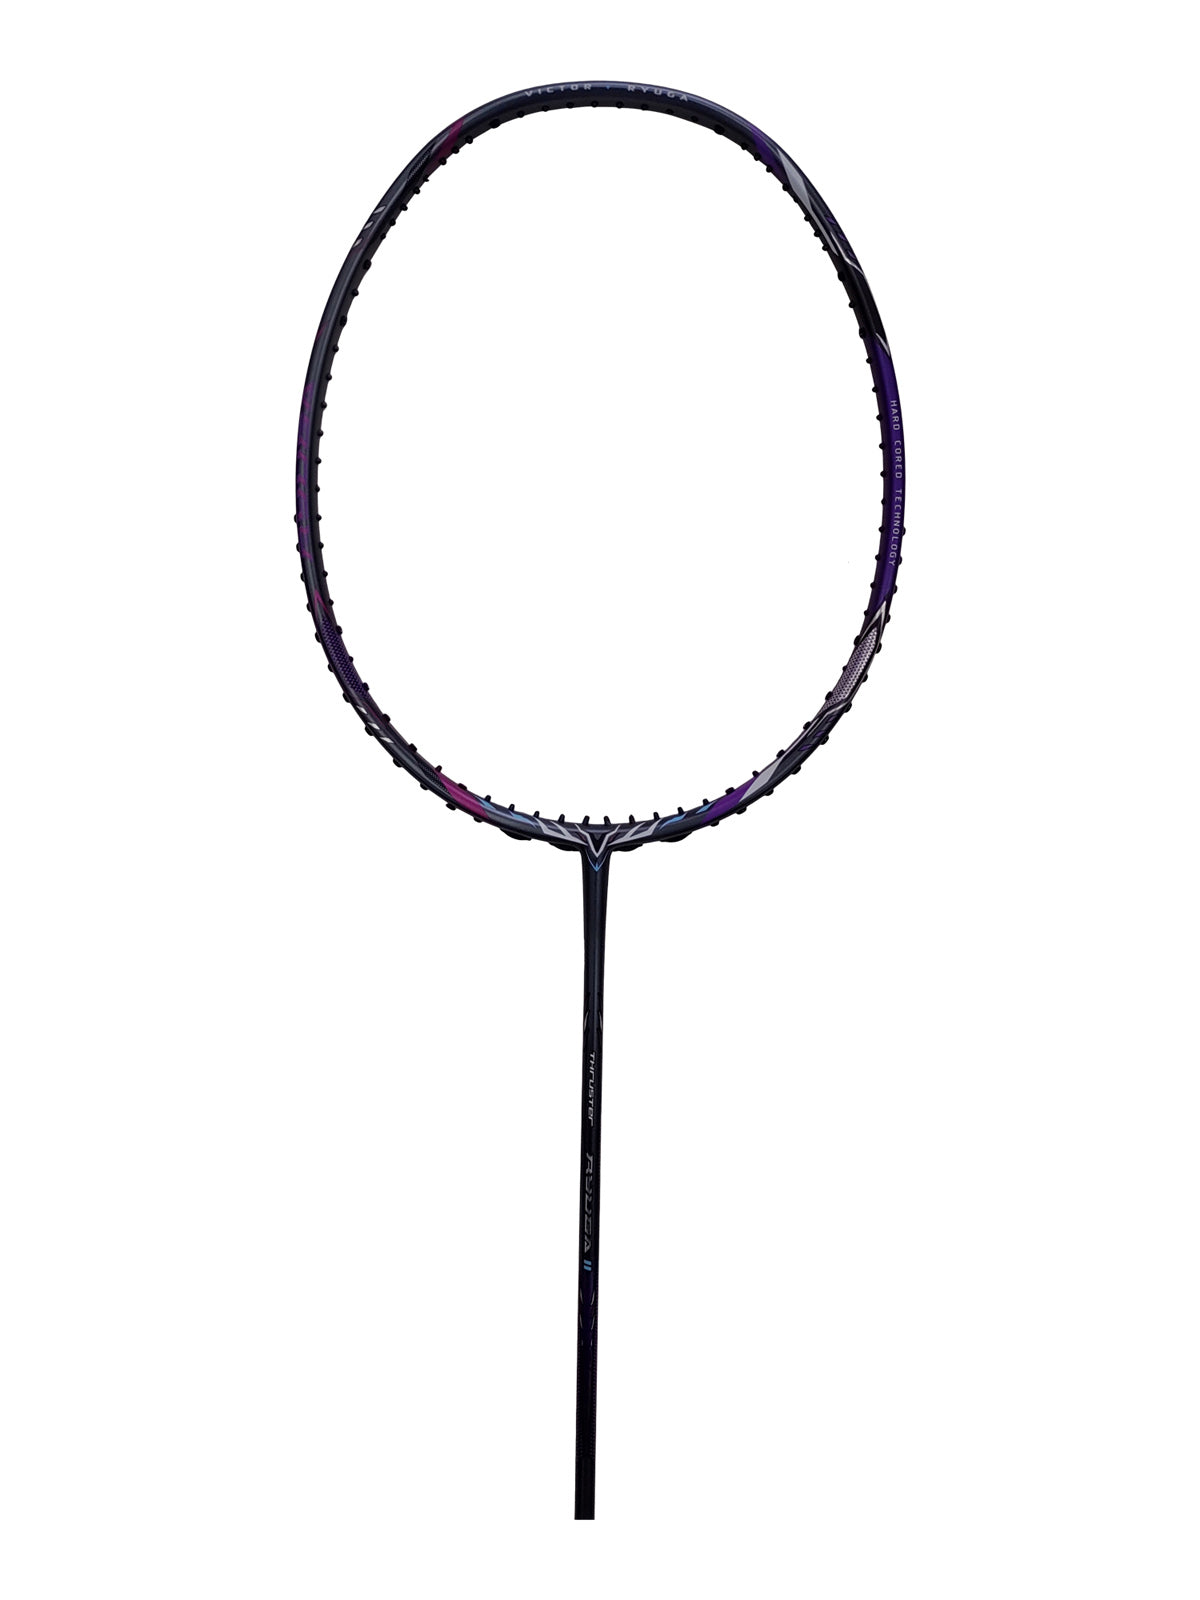 Thruster TK-RYUGA II Badminton Racket